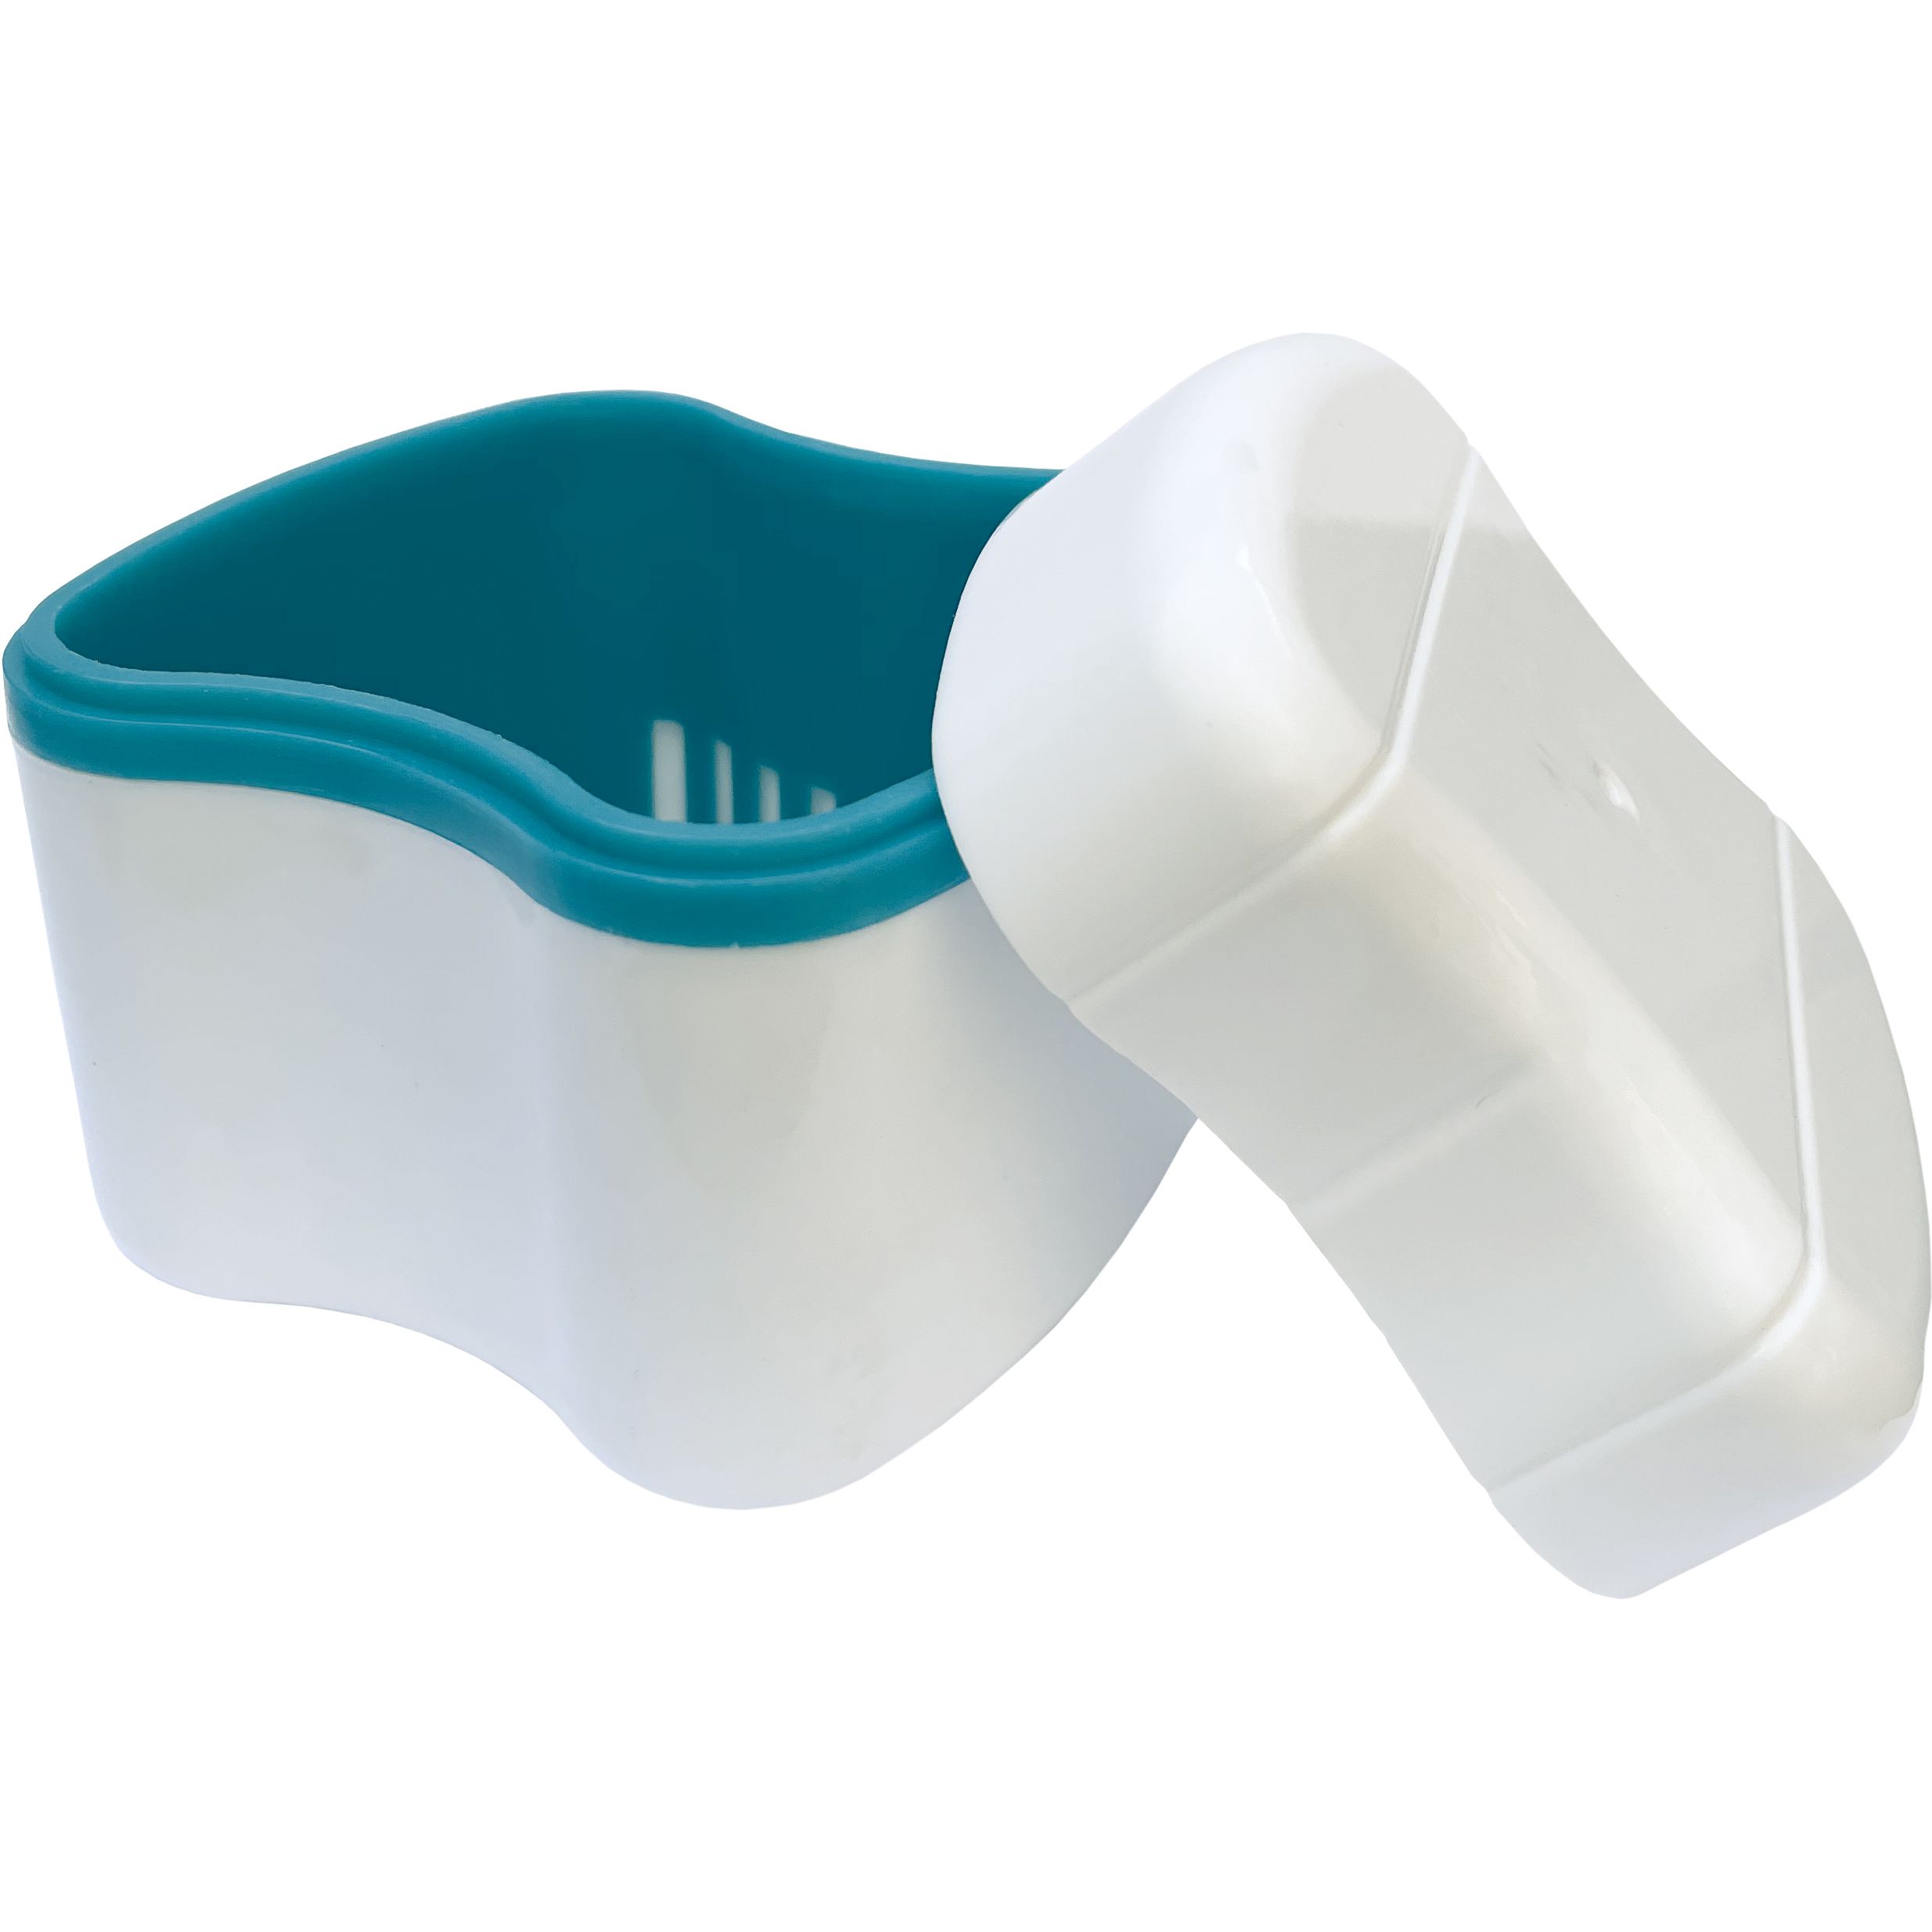 Футляр для мытья и хранения зубных протезов Dochem Premium - фото 2